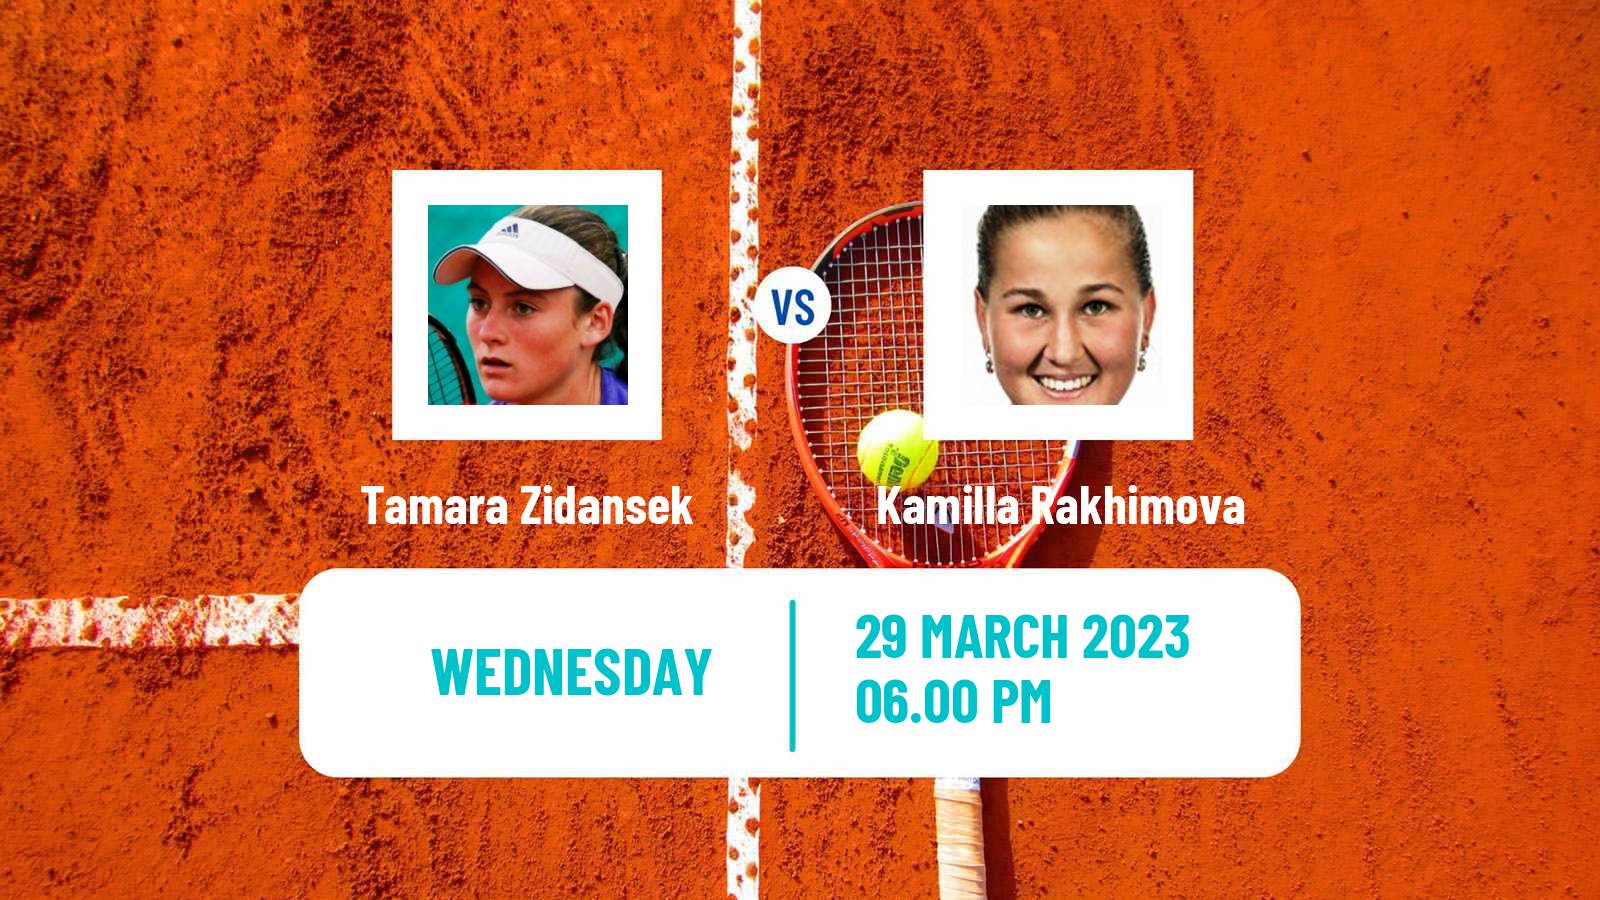 Tennis ATP Challenger Tamara Zidansek - Kamilla Rakhimova